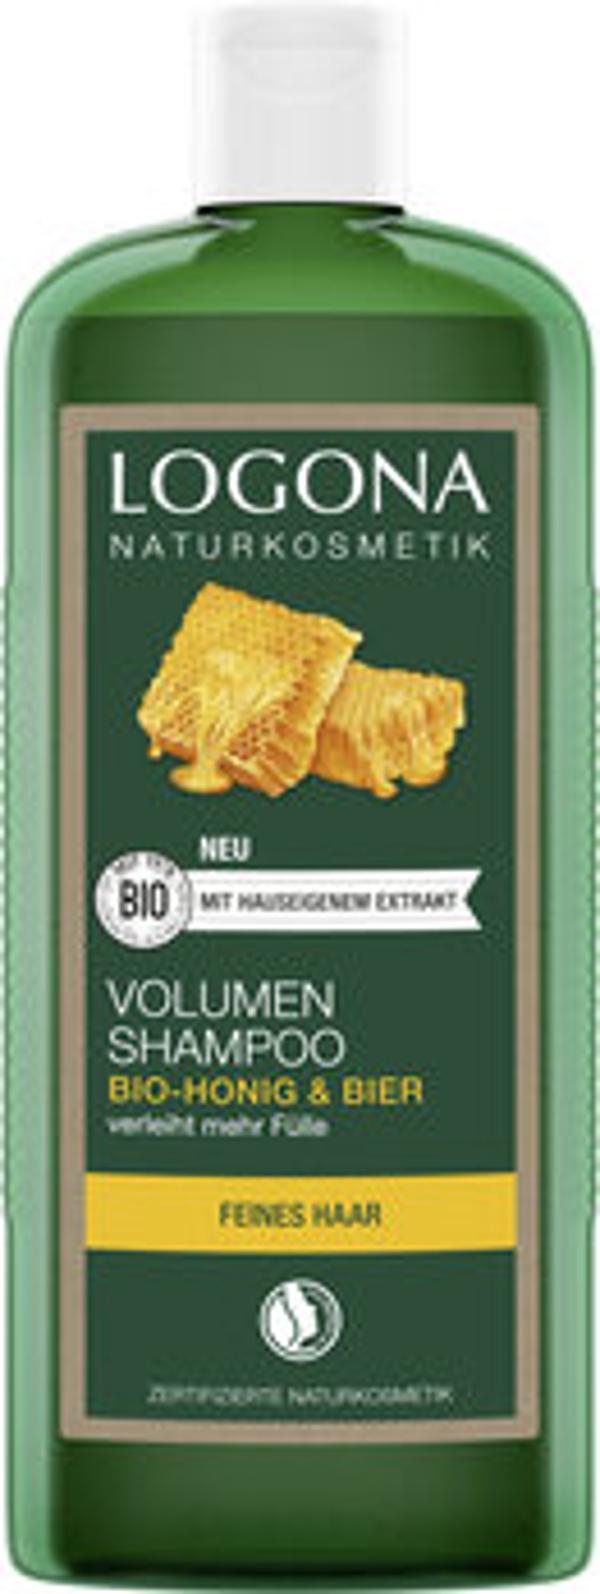 Produktfoto zu Volumen Shampoo Bier & Honig 500ml